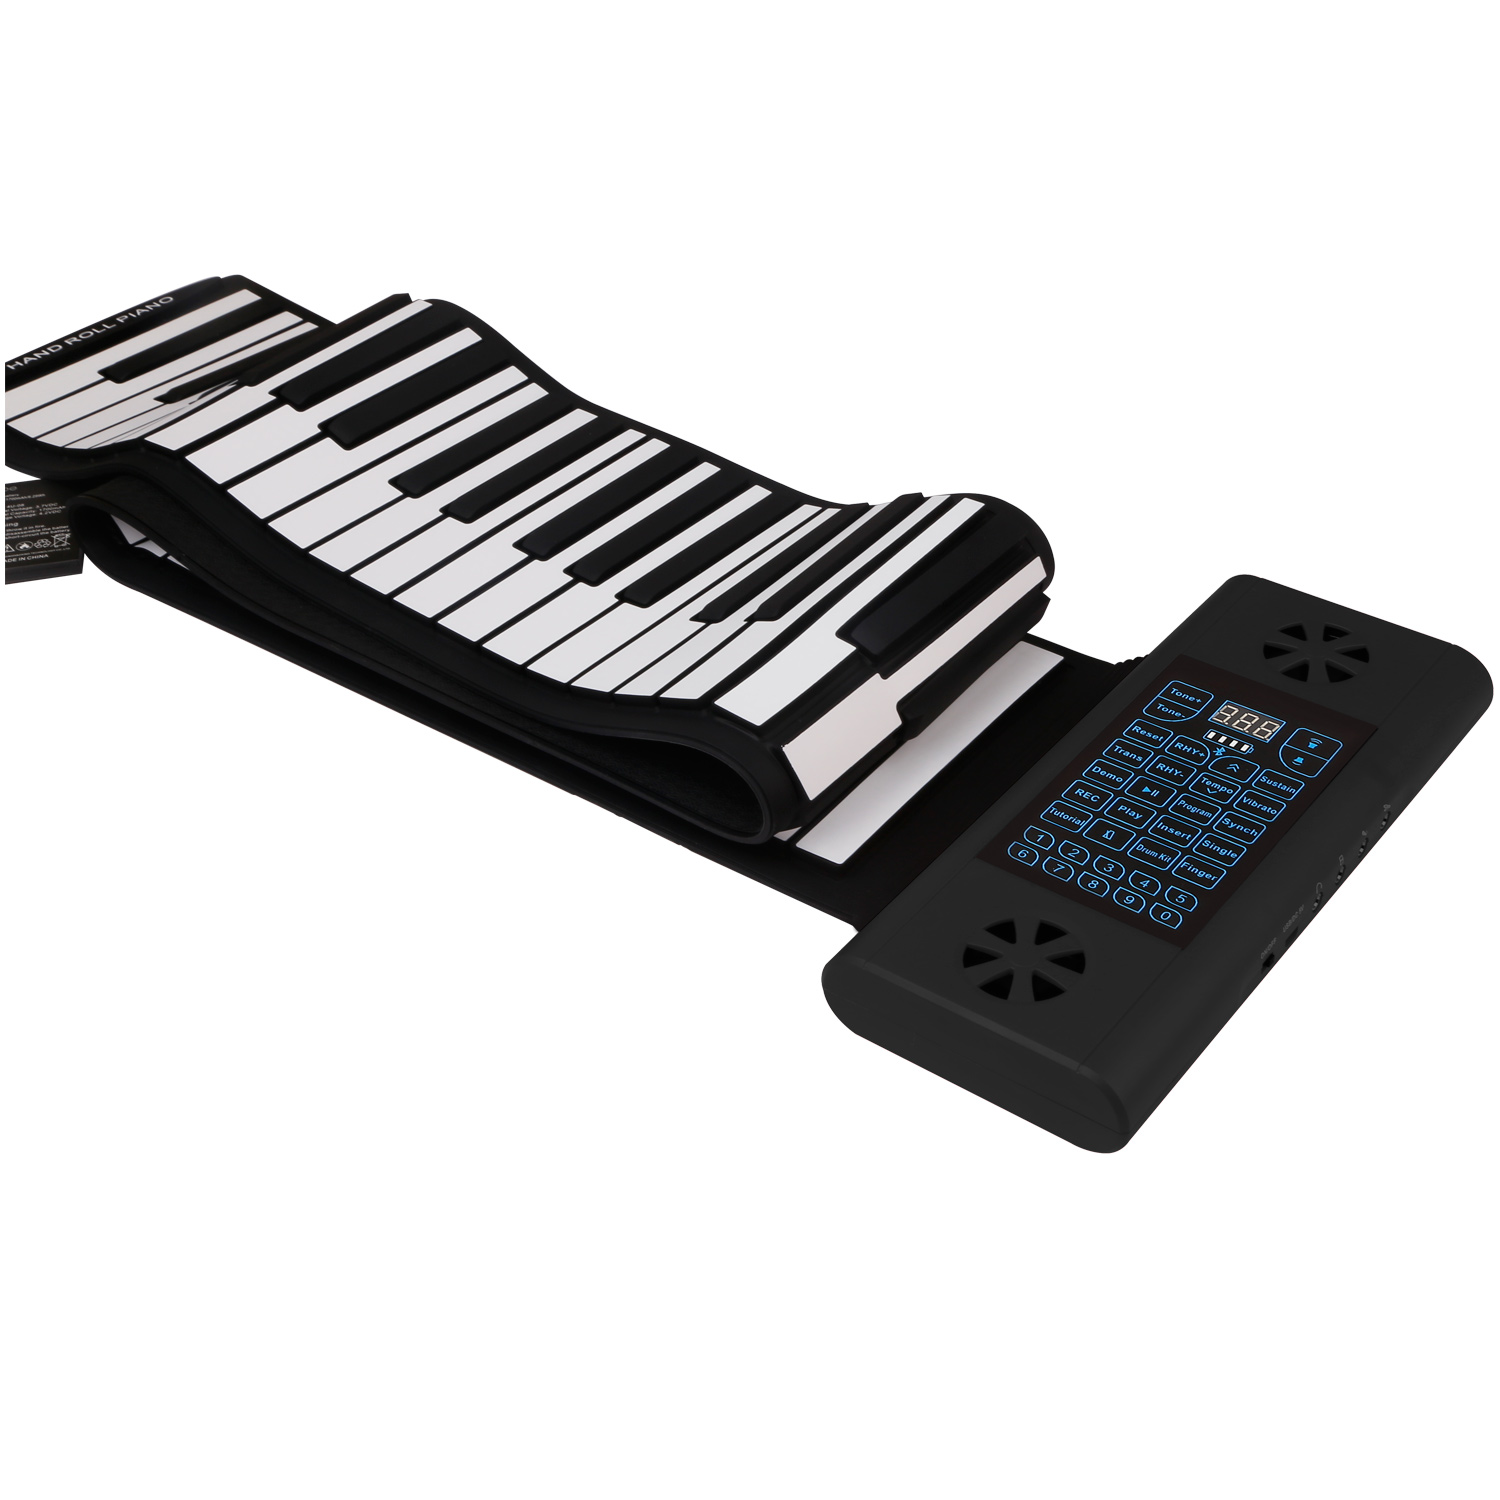 Đàn Piano Cuộn Konix PS88 - 88 phím mềm dẻo Flexible (Roll Up Piano - Midi Keyboard Controller) - Kèm Móng Gảy DreamMaker